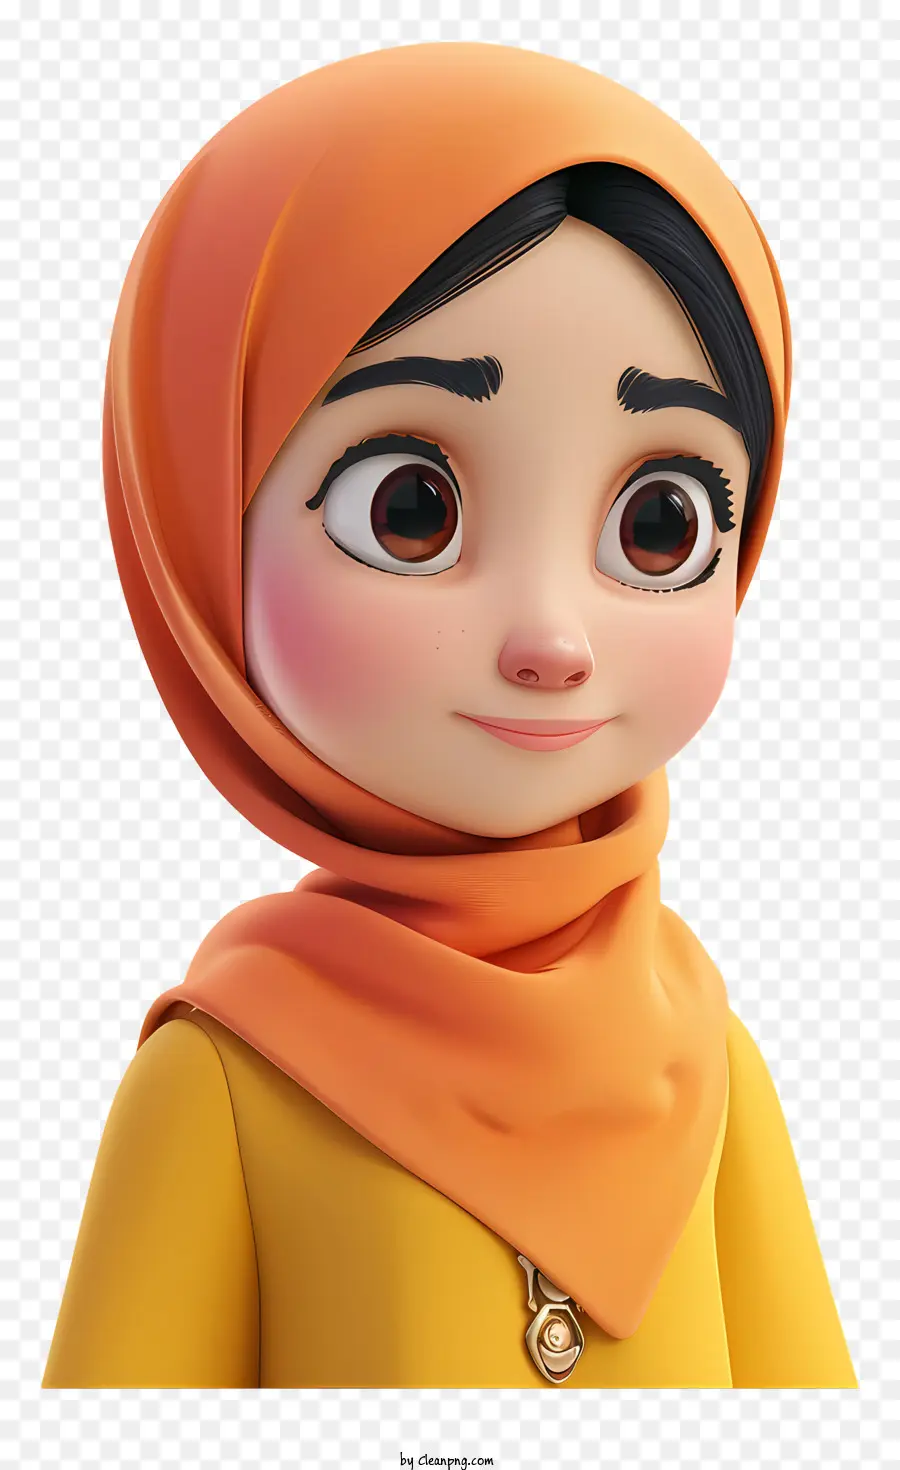 Trùm - Người phụ nữ trẻ ở Hijab màu cam, biểu hiện chiêm ngưỡng